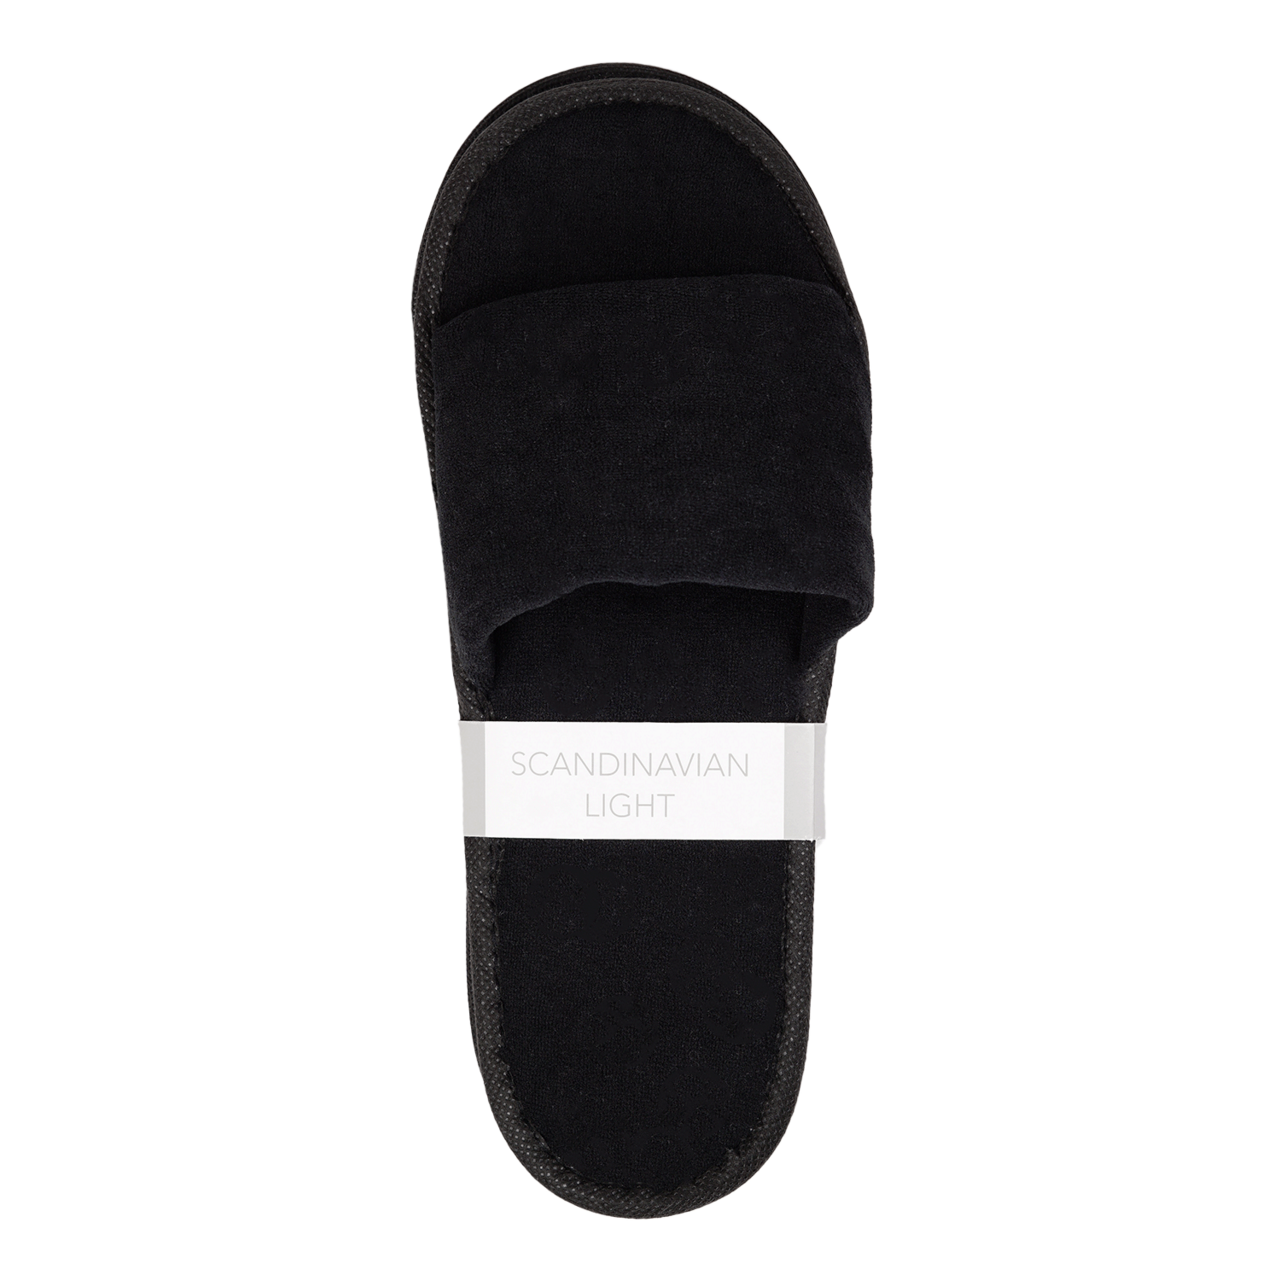 Slippers Comfort SL Velour 29 cm, Black 